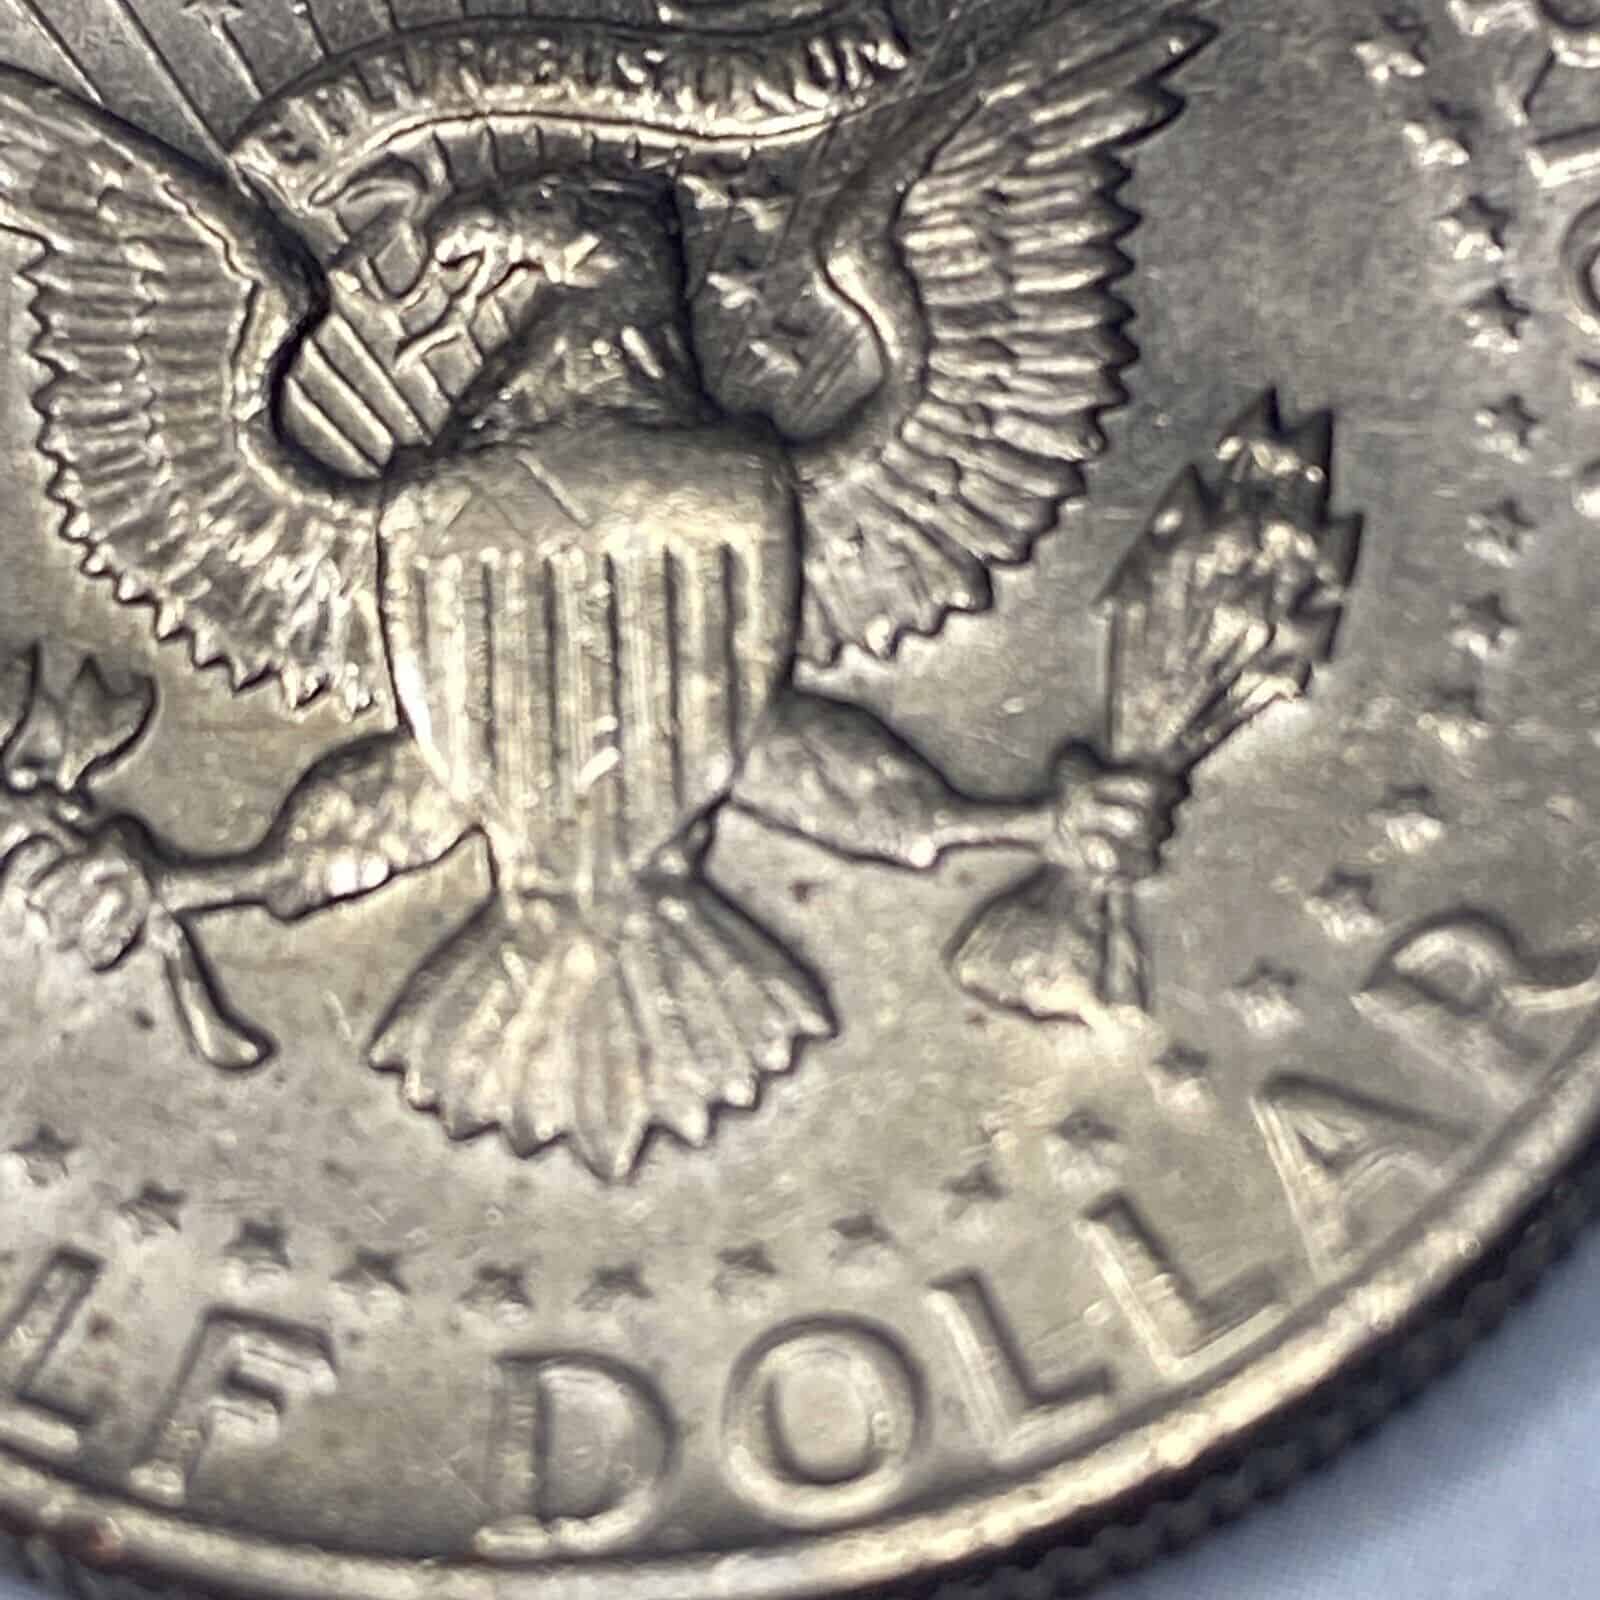 1977 Kennedy Half Dollar Missing “FG” Error